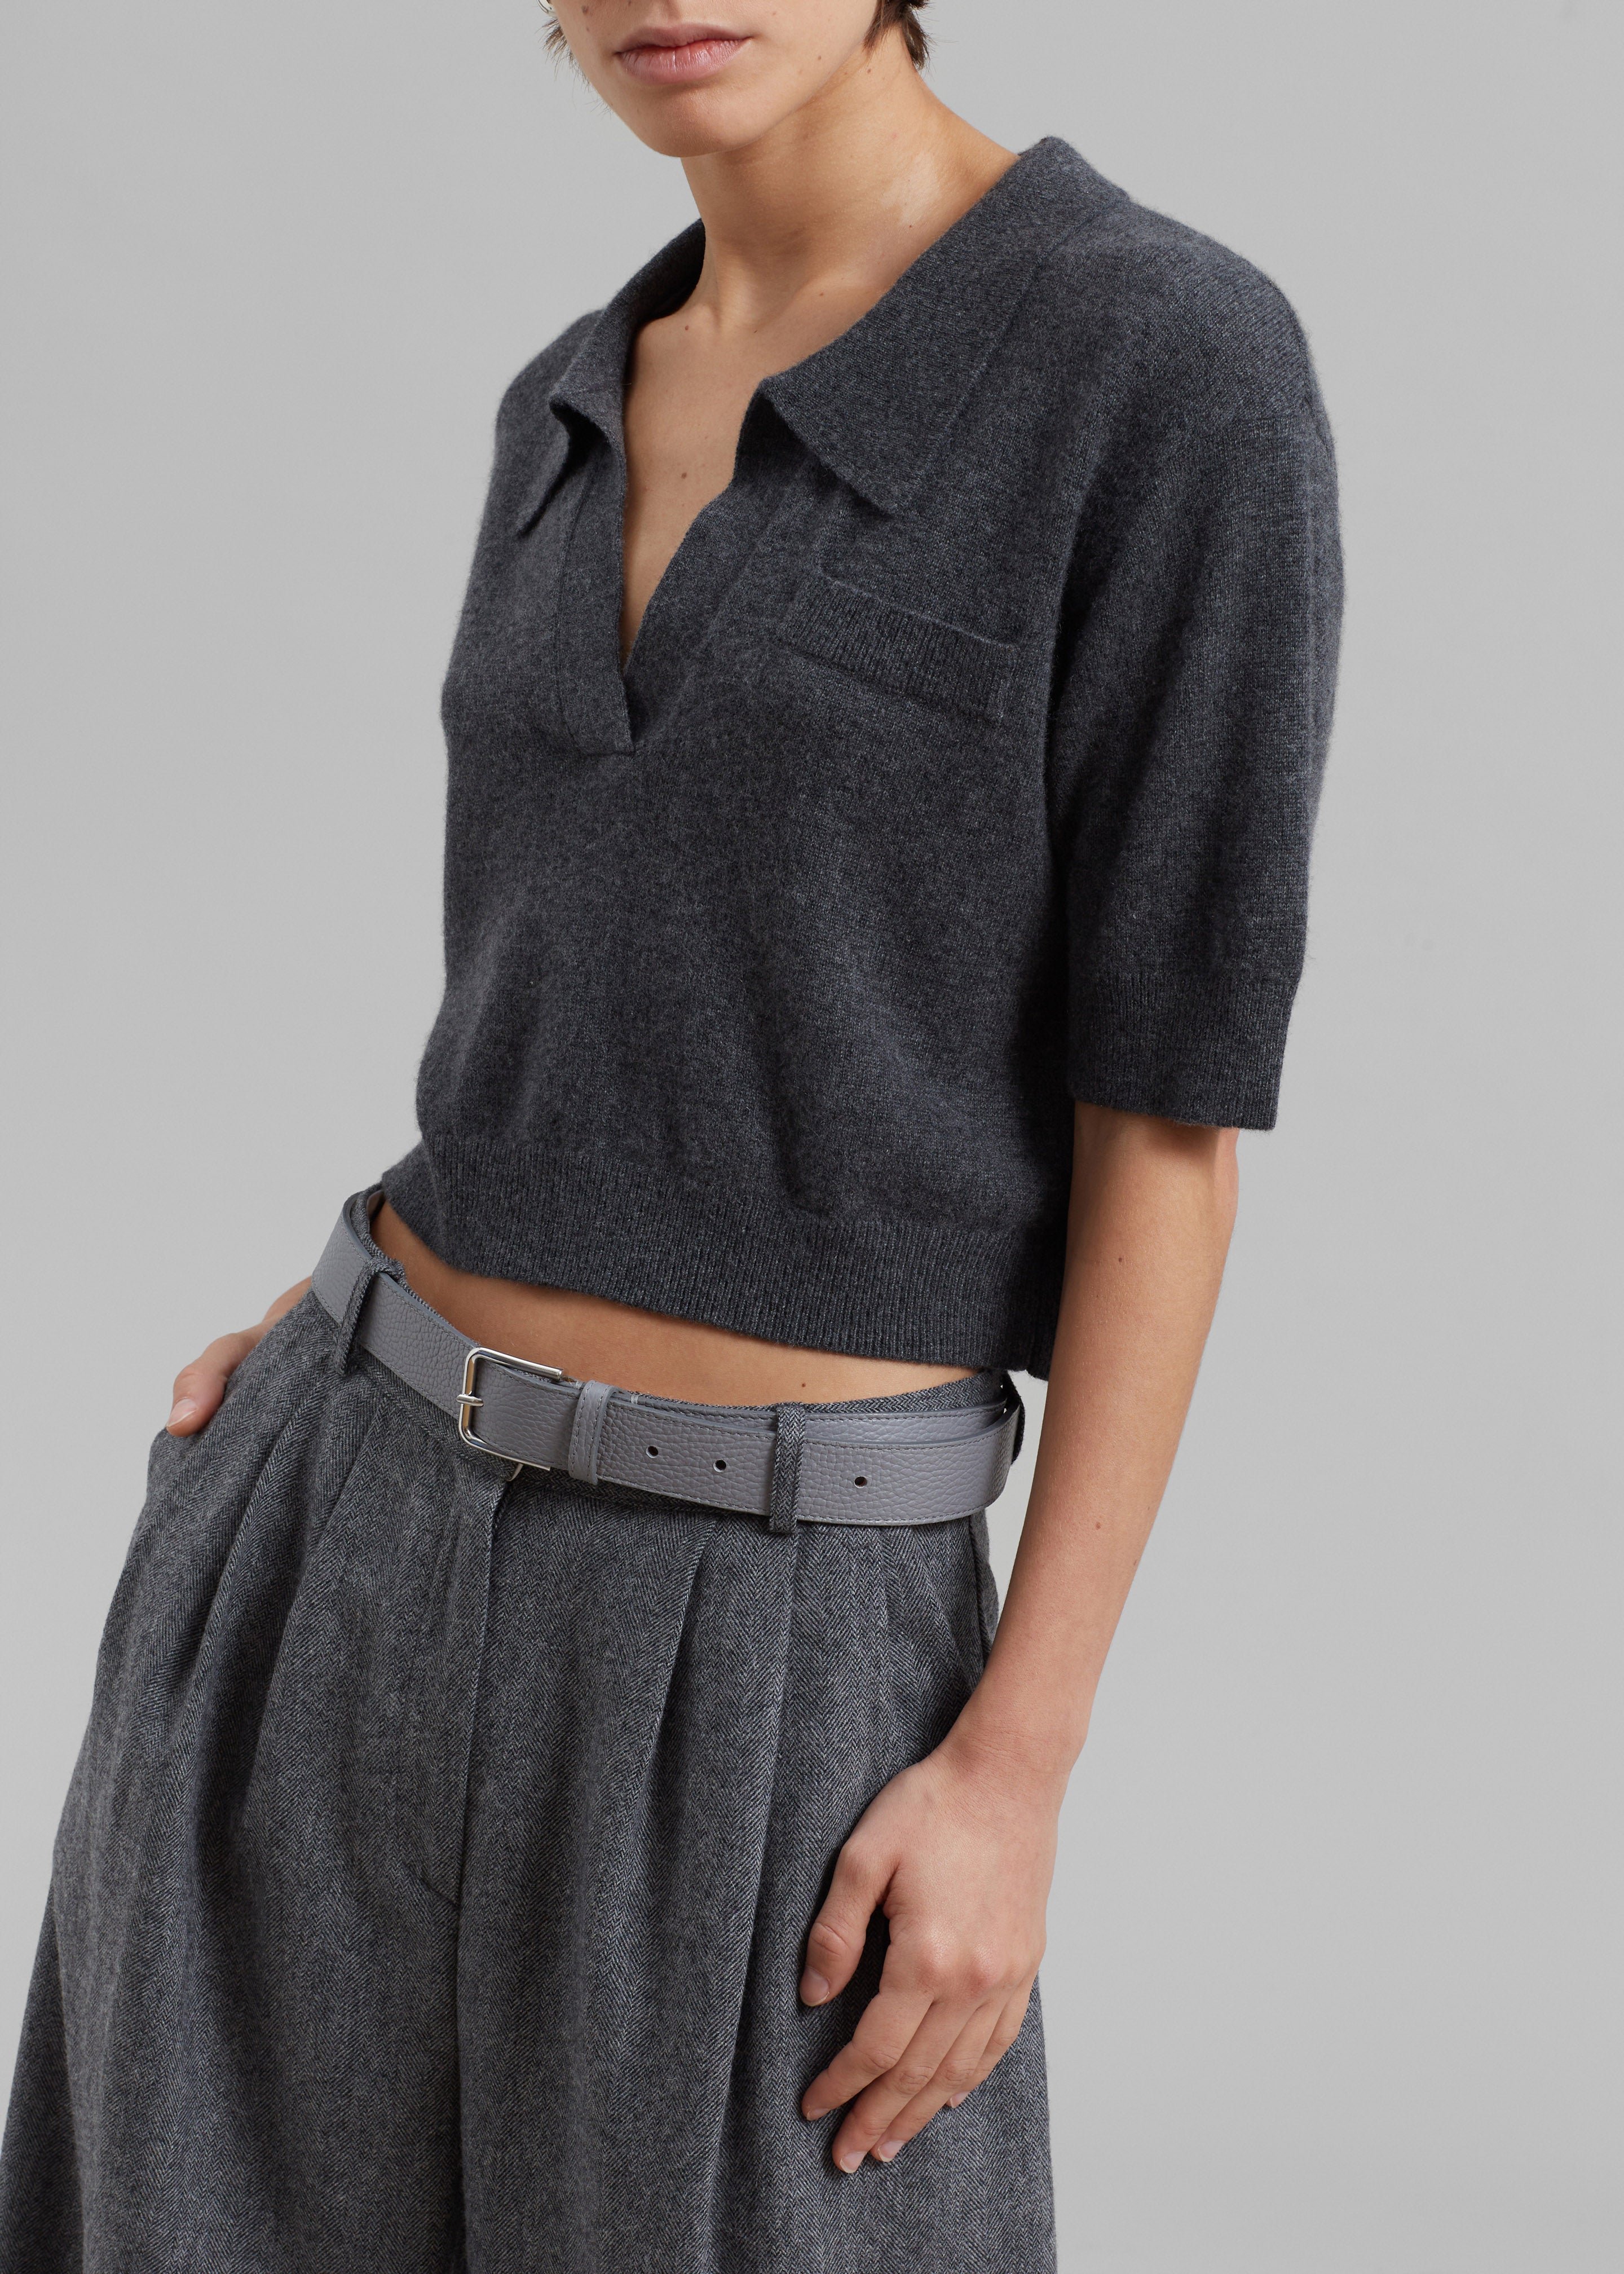 The Garment Piemonte Cropped Sweater - Grey Melange - 2